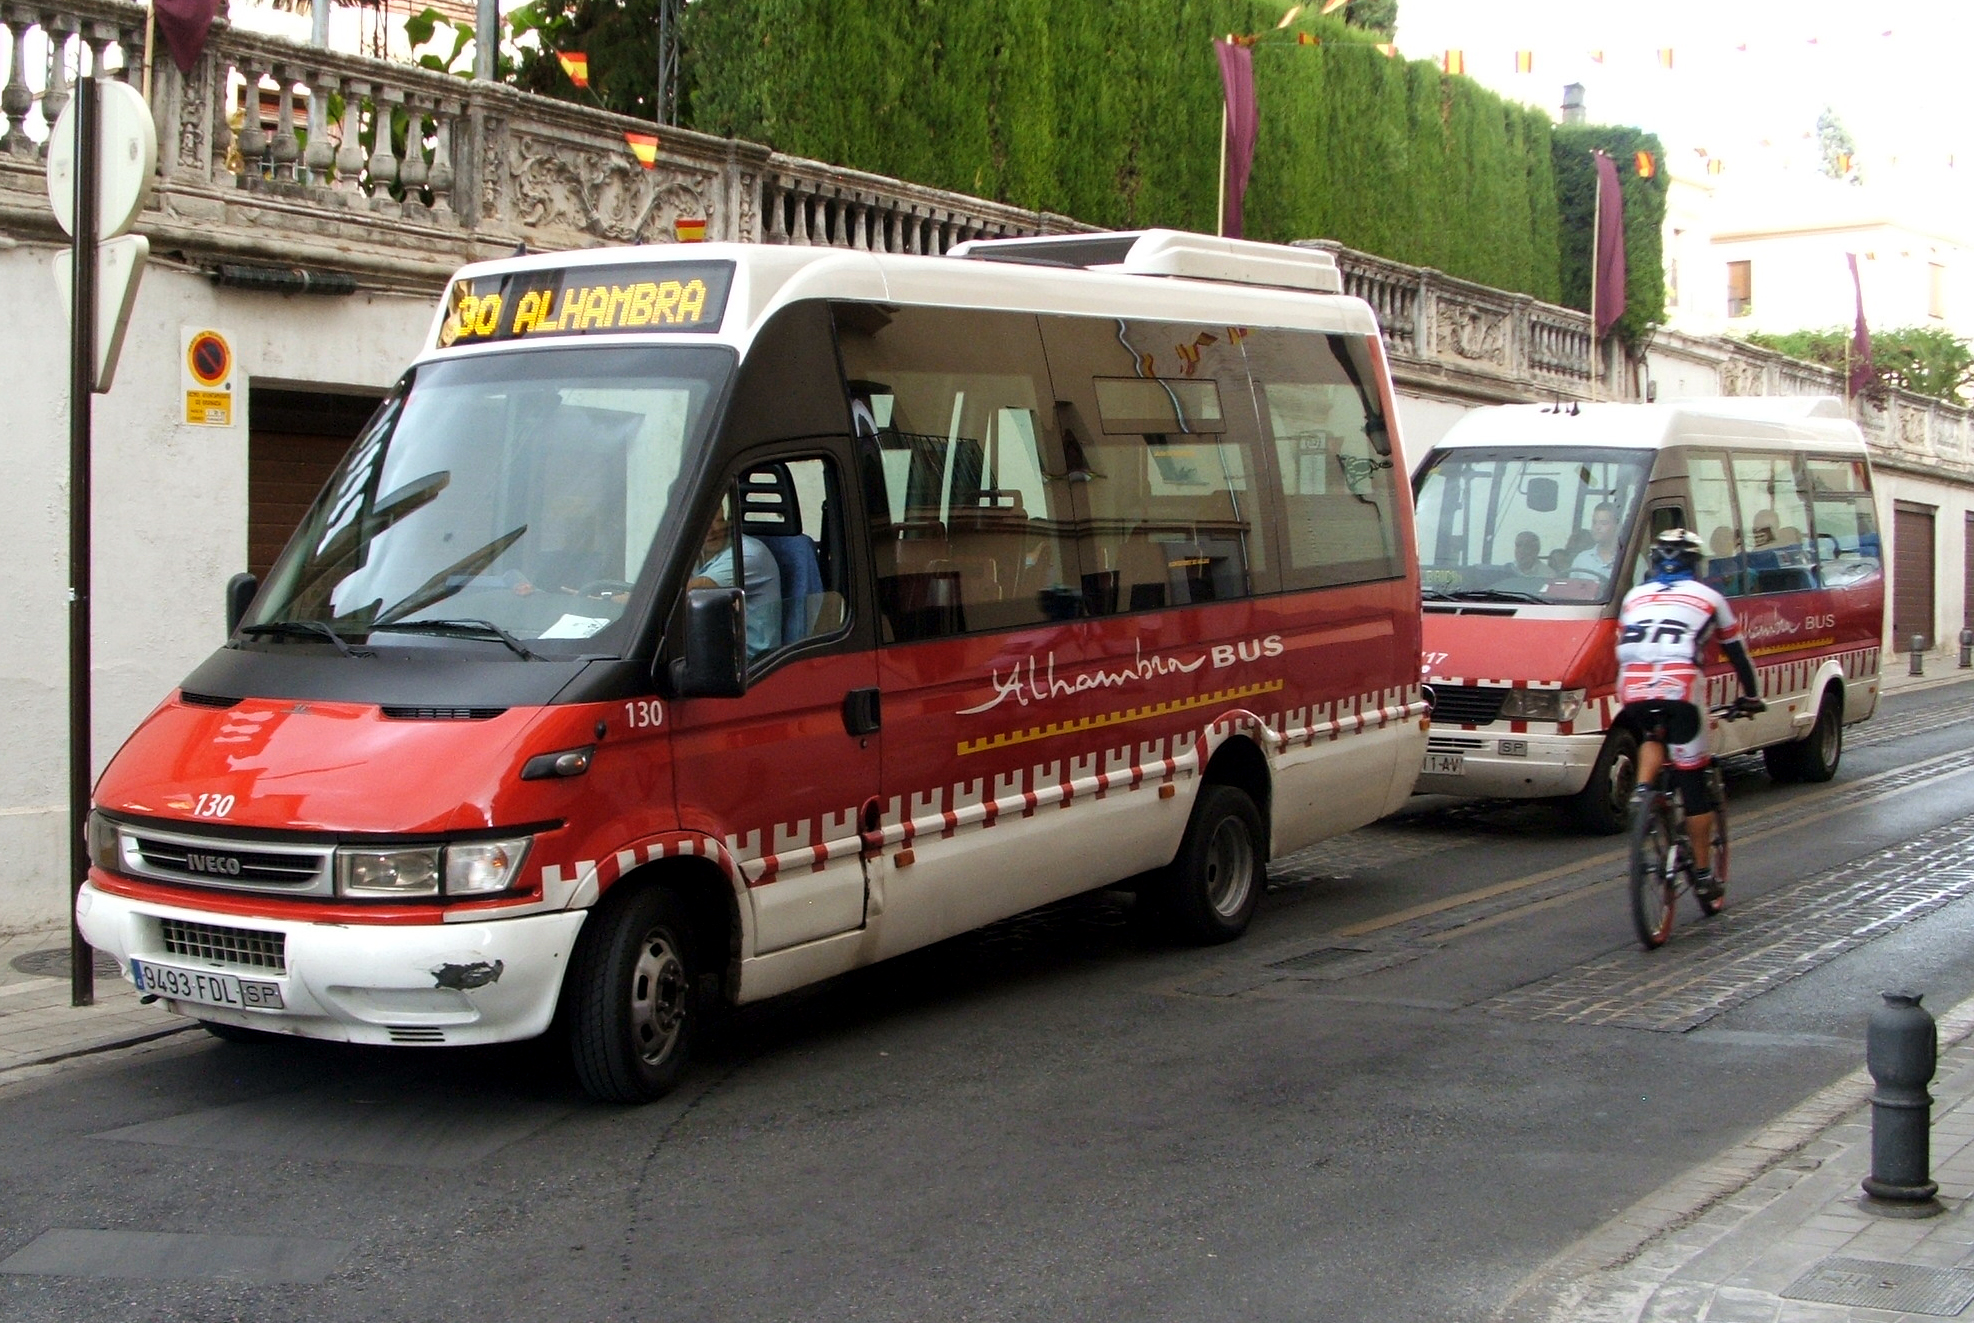 Granada_alhambra_bus